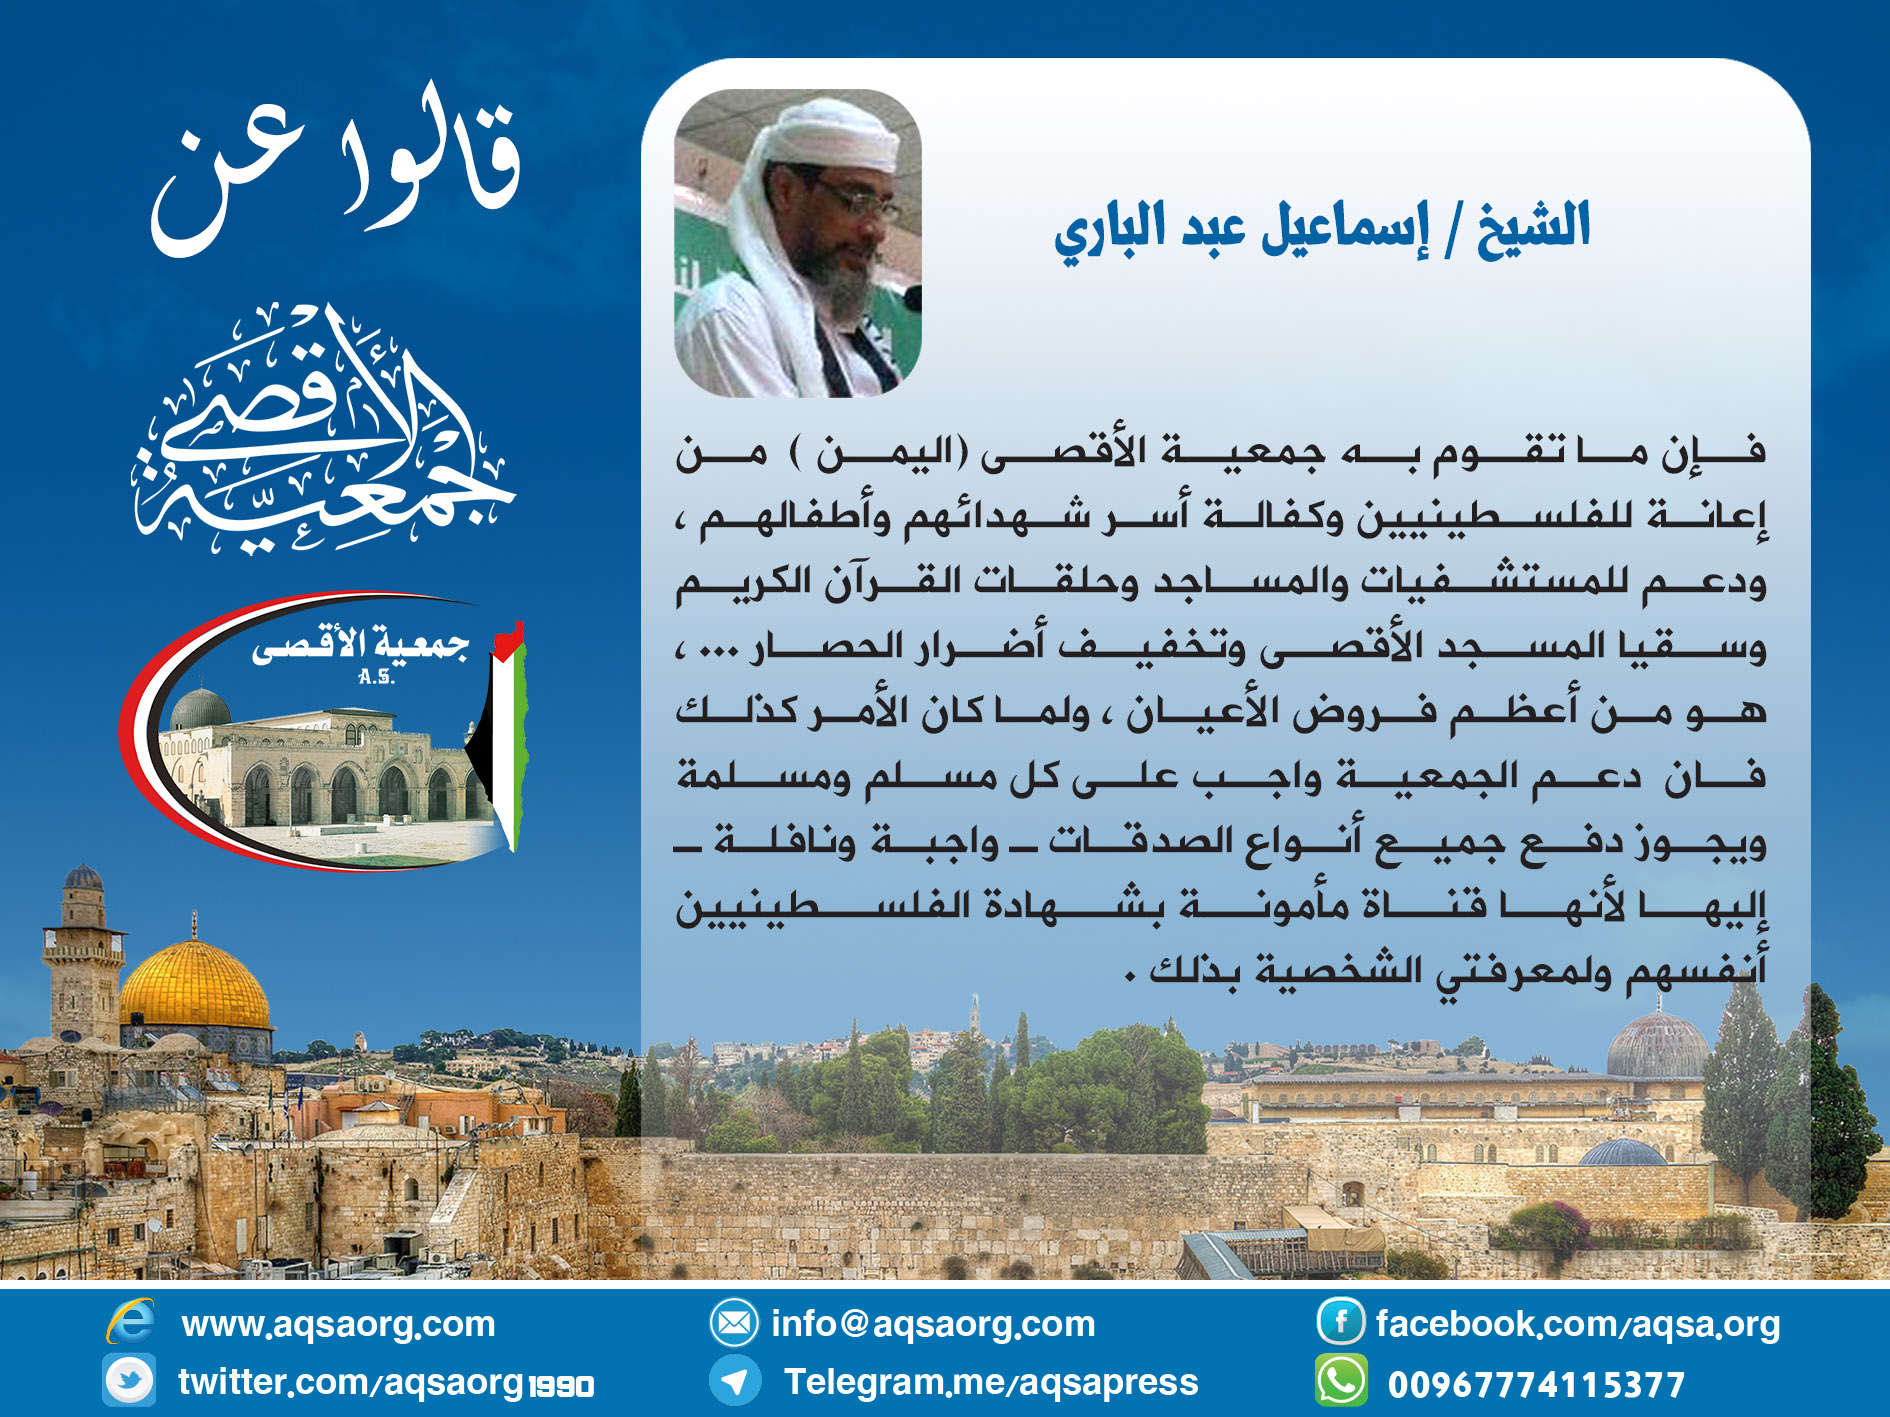 الشيخ اسماعيل عبدالباري : إن ما تقوم به جمعية الأقصى -اليمن- هو من أعظم فروض الأعيان